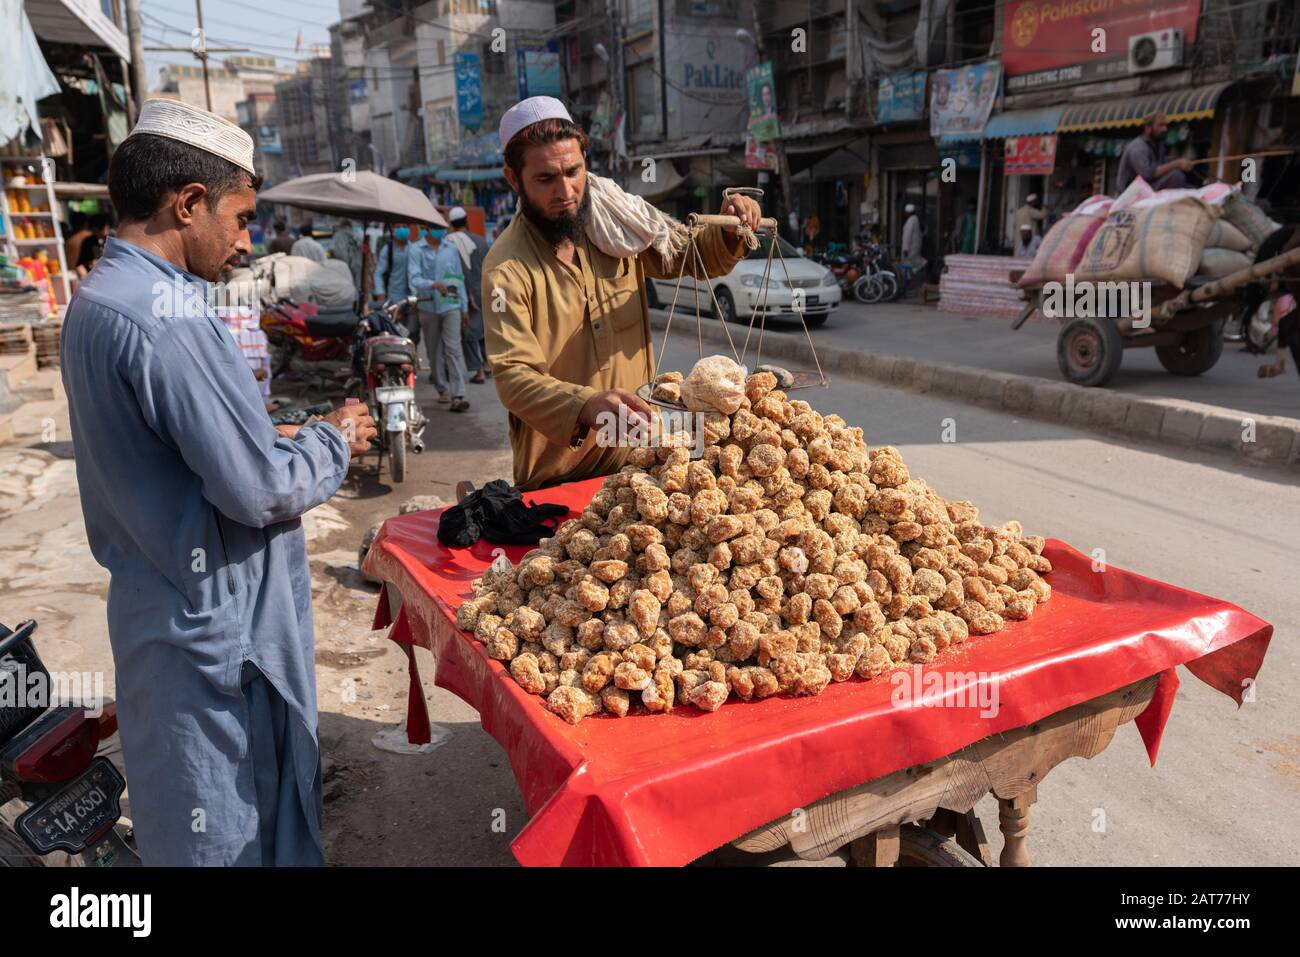 Pashtun homme qui vend de la quincaillerie ('gur') à partir de la canne à sucre dans les rues de Peshawar, au Pakistan Banque D'Images